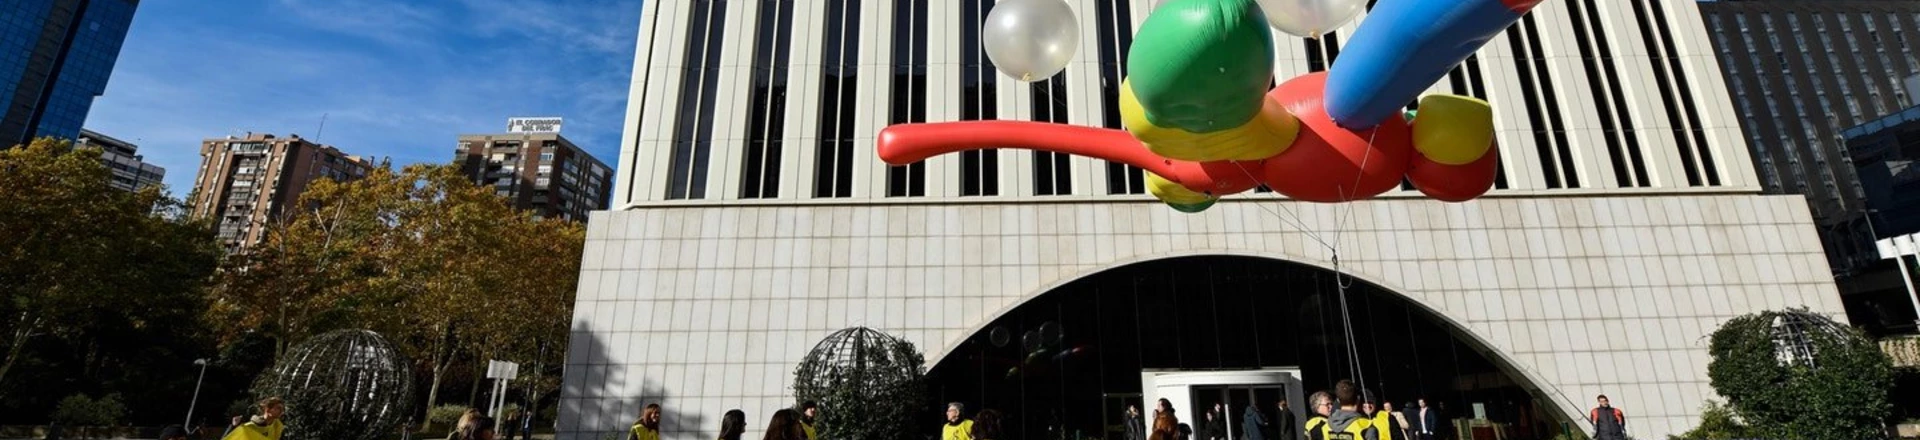 Ativistas da Anistia Internacional seguram um enorme balão em formato de libélula no lado de fora da sede da Google, em Madri, no dia 27 de novembro de 2018, como parte de uma campanha para pedir que a Google cancele seu plano controverso de lançar uma ferramenta de busca censurada na China.